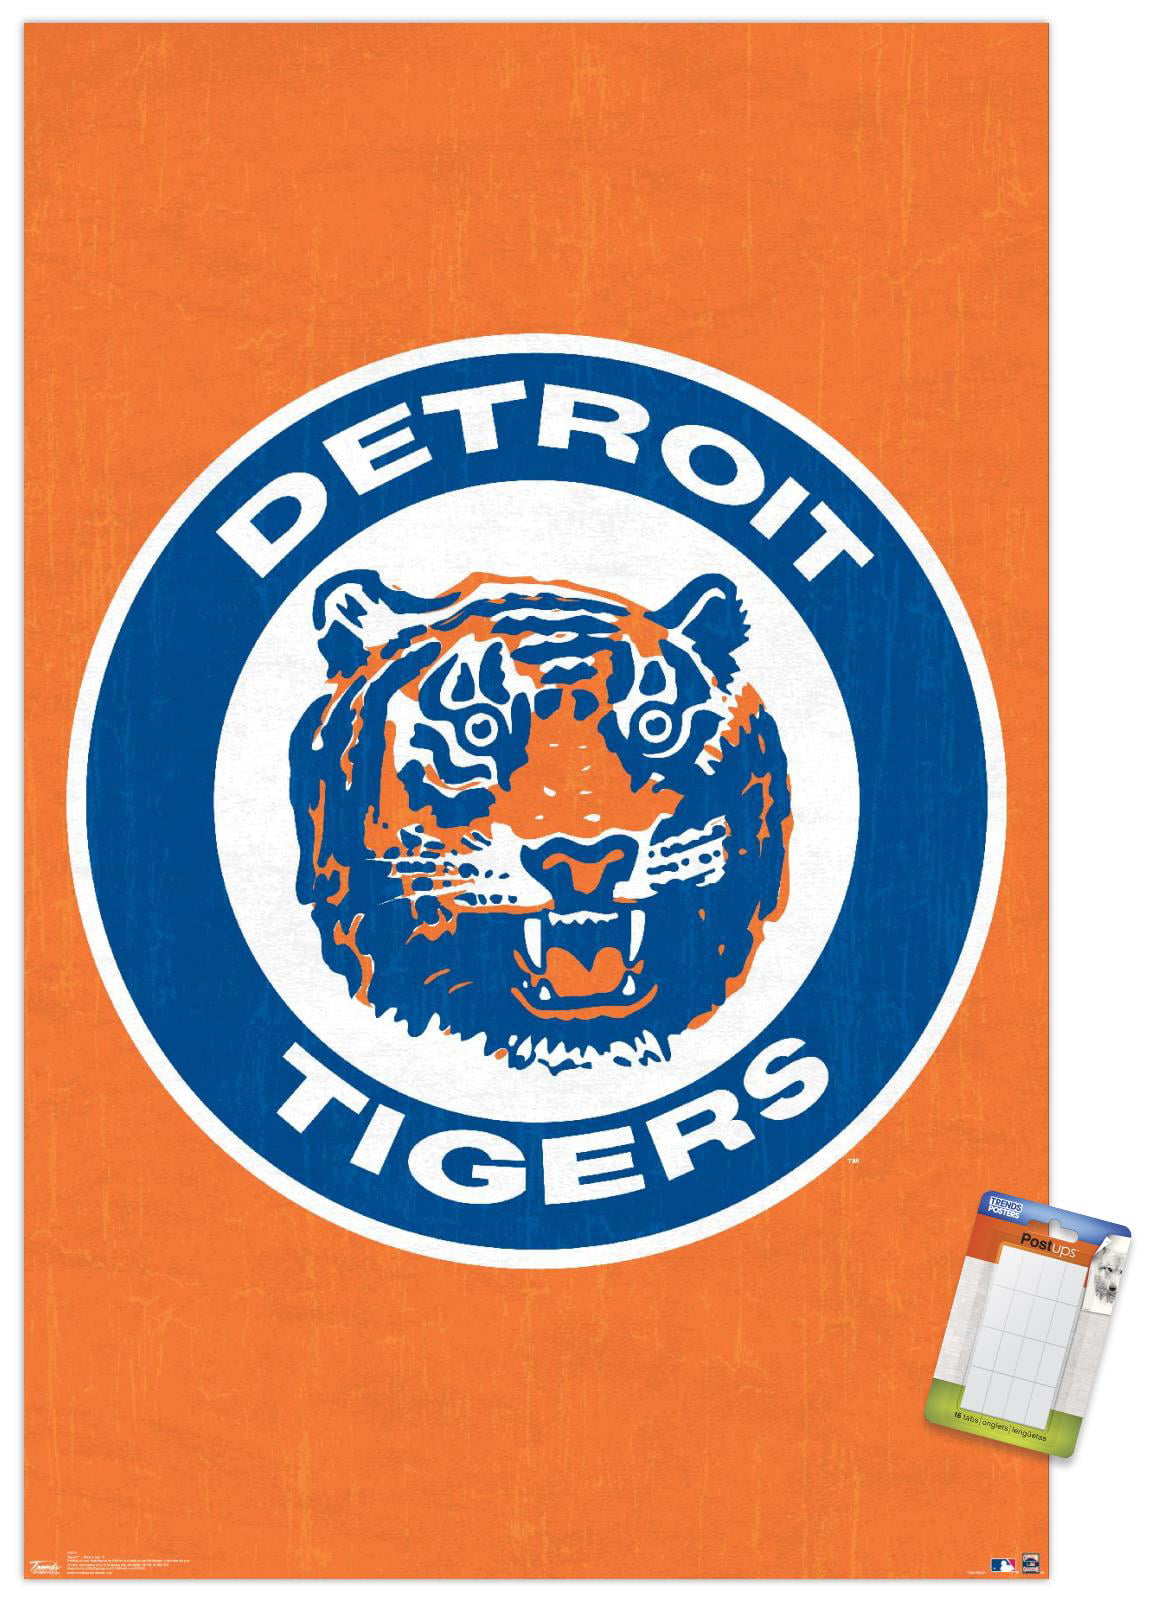 Detroit Tigers - Vintage Detroit Collection